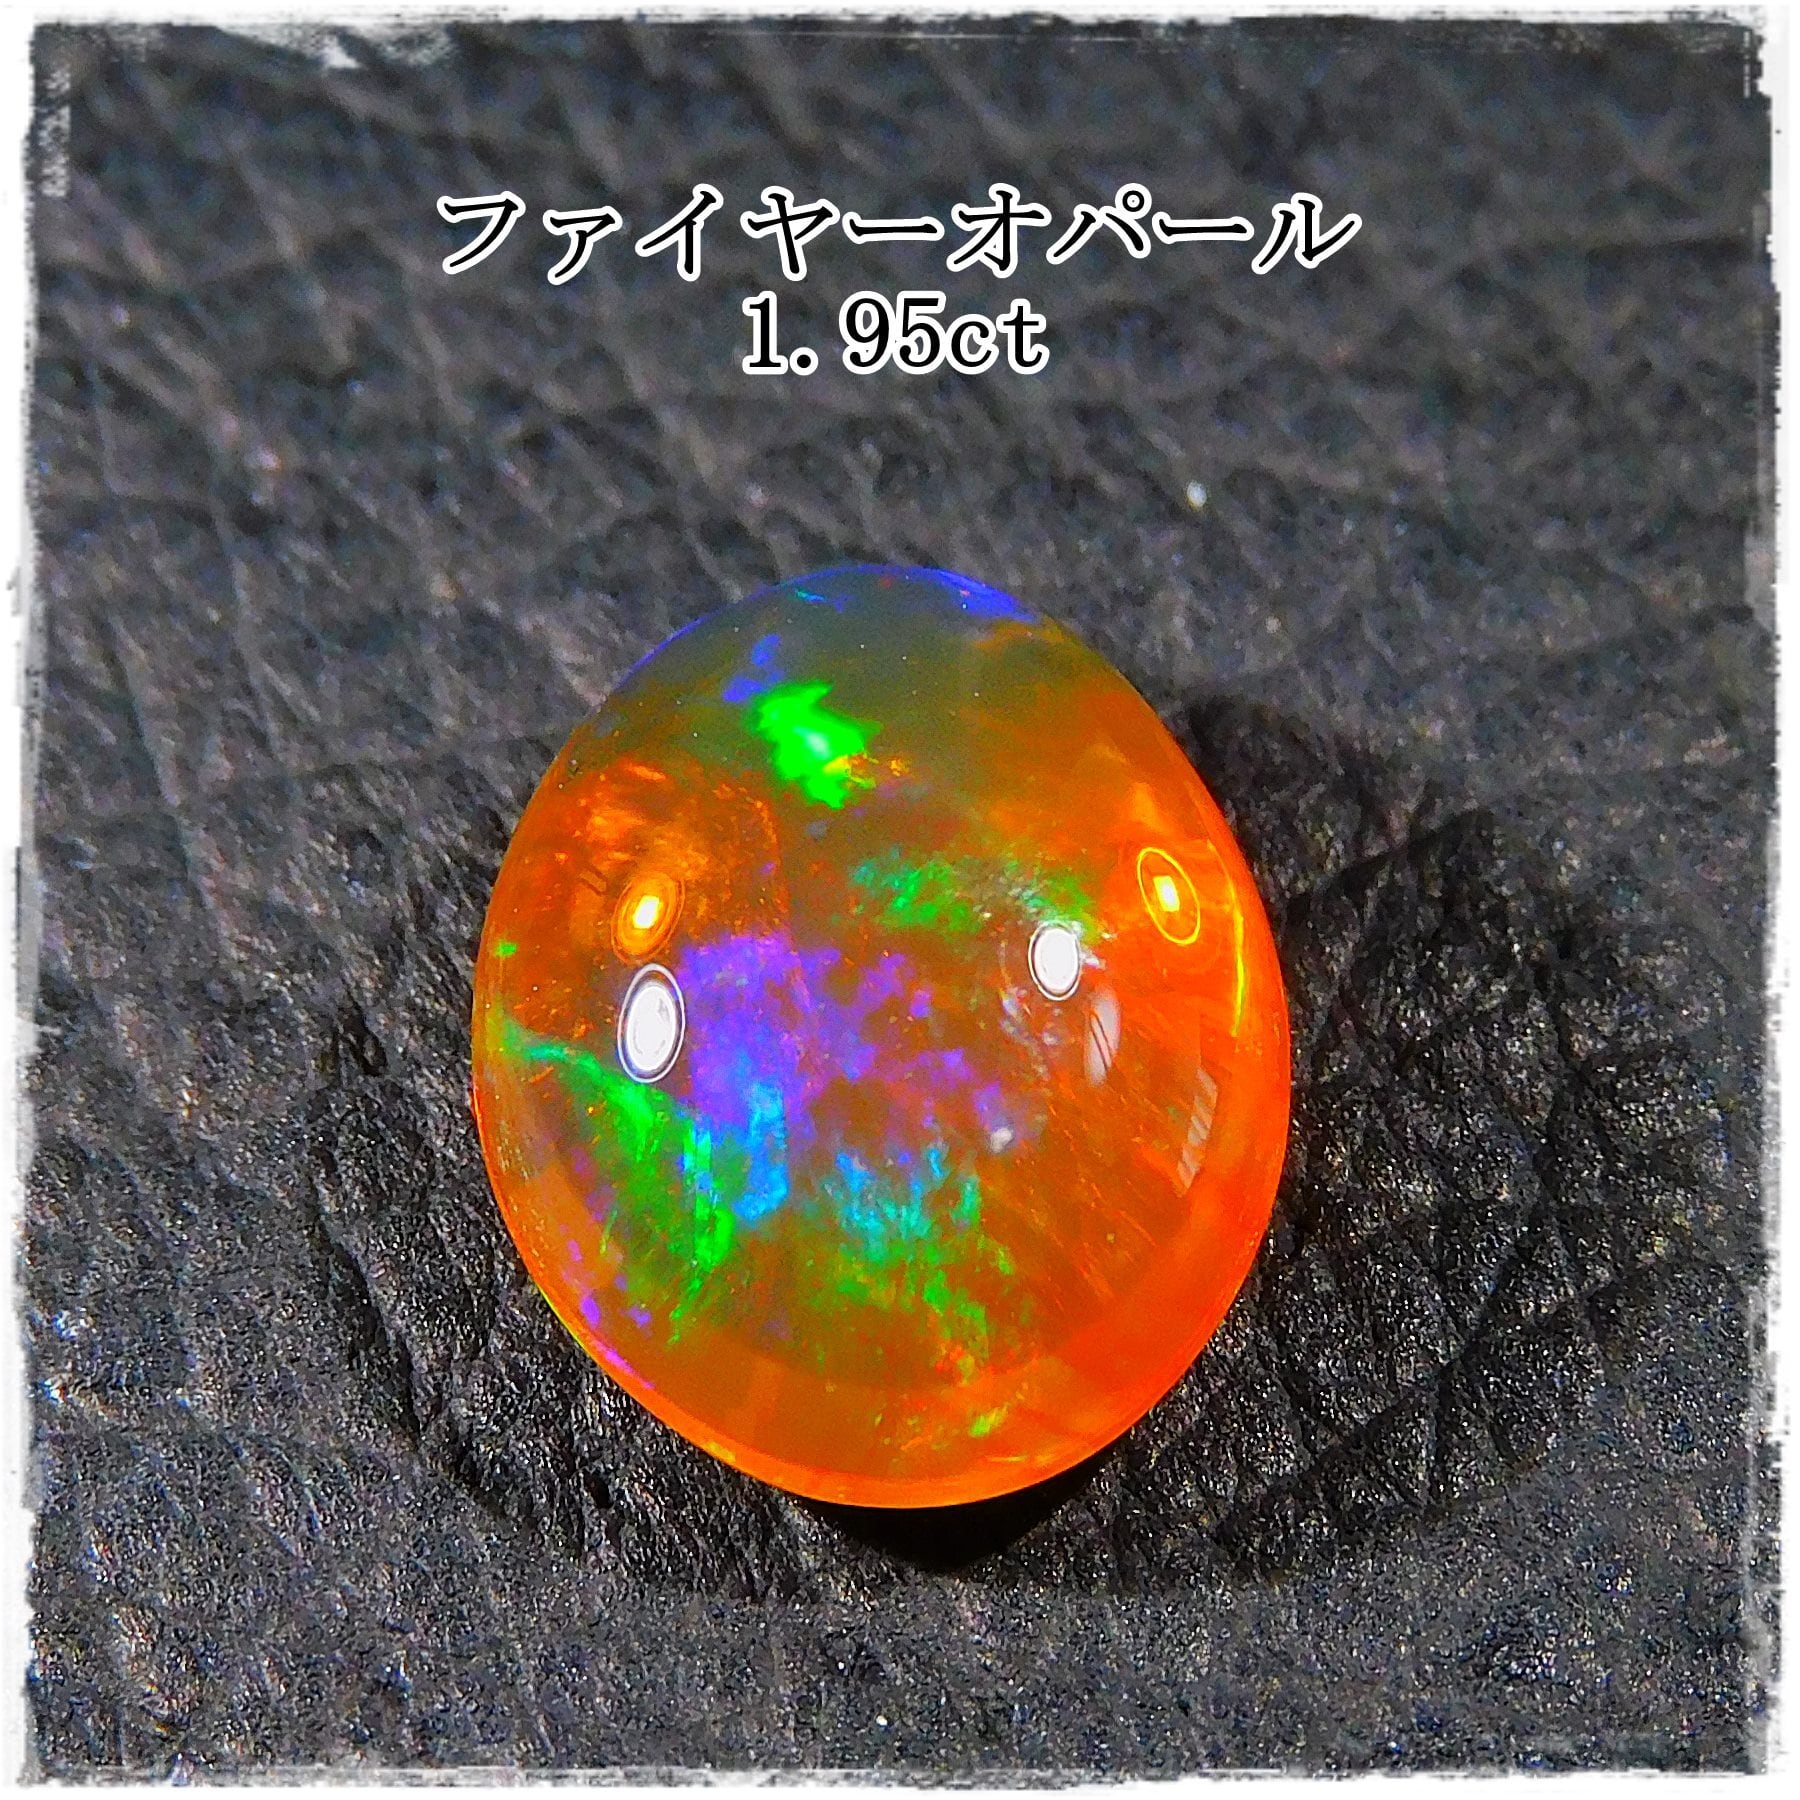 ファイヤーオパール 1.95ct | ganpanda 彡stone